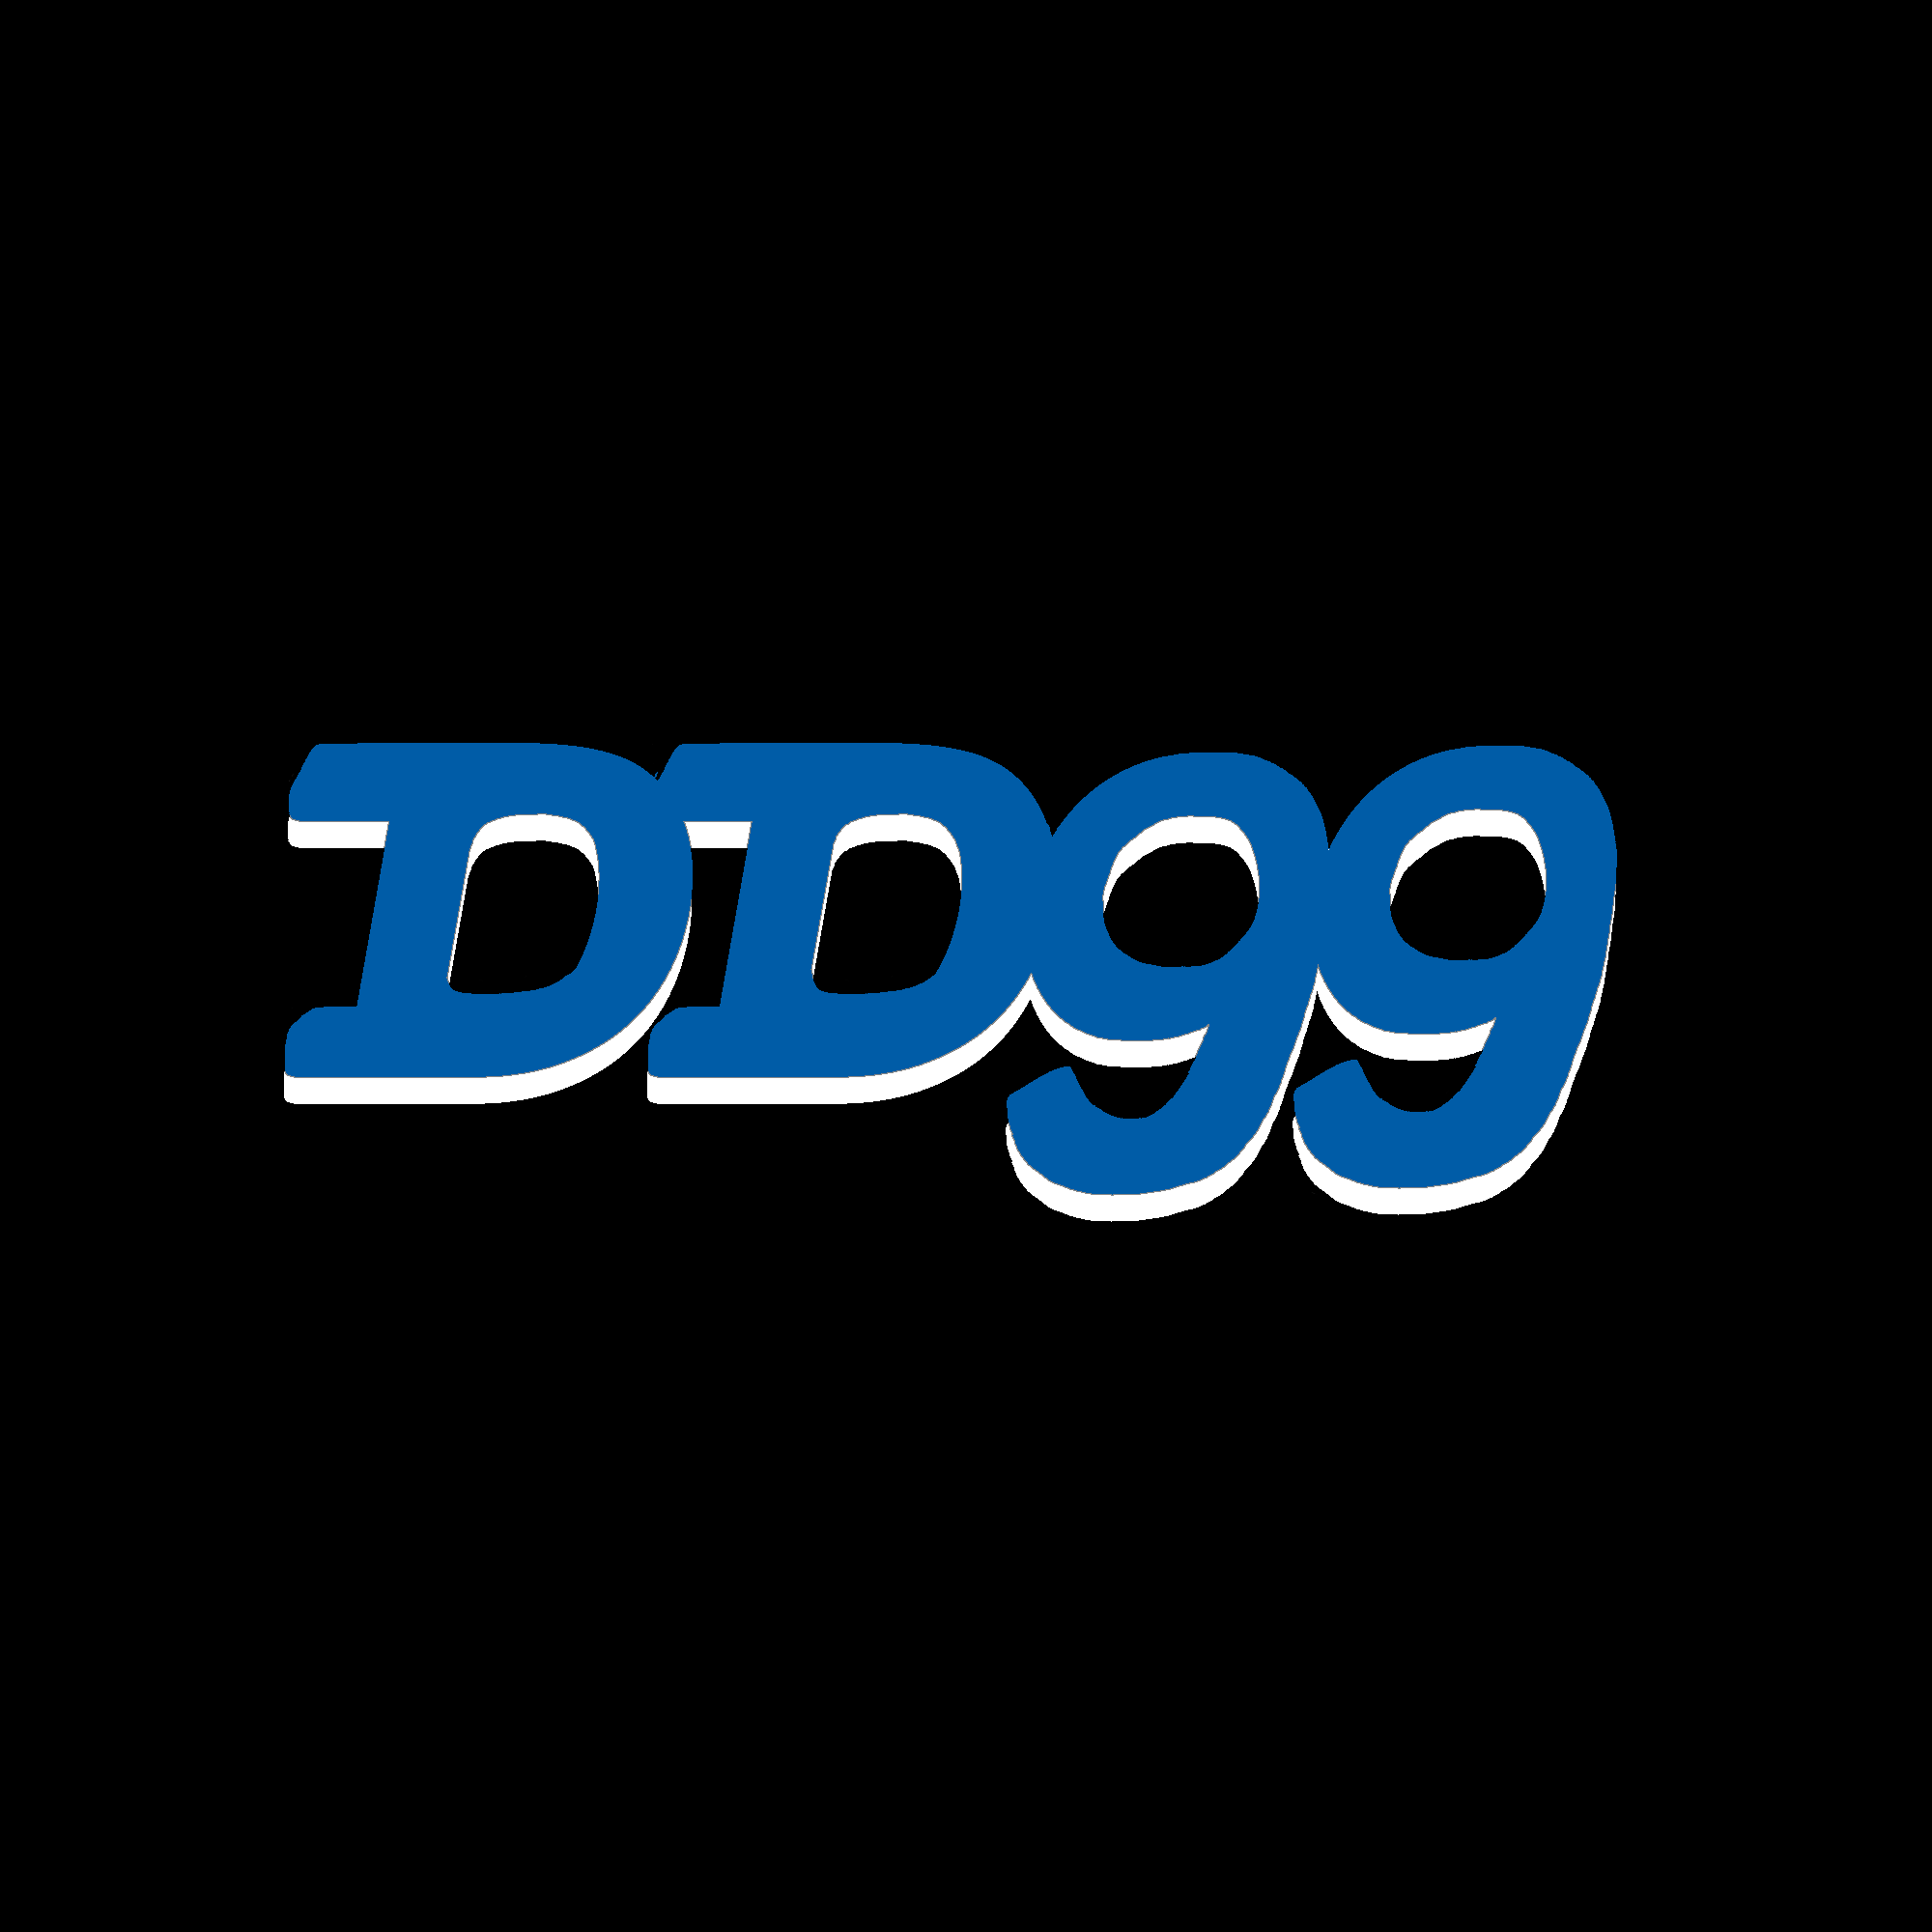 Logotipo do DD99 Casino